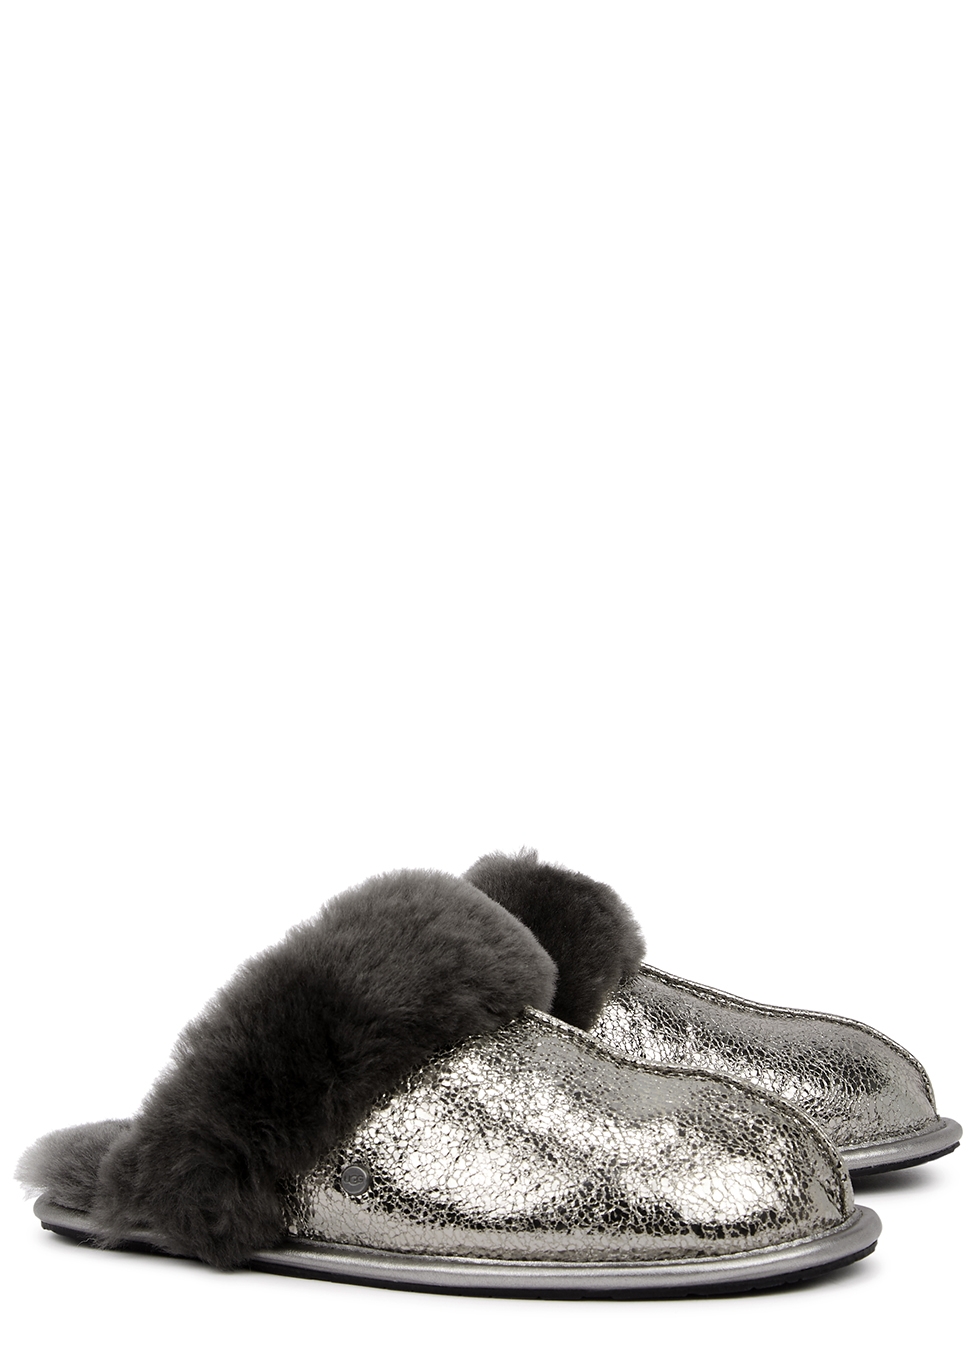 Details 141+ ugg glitter slippers latest